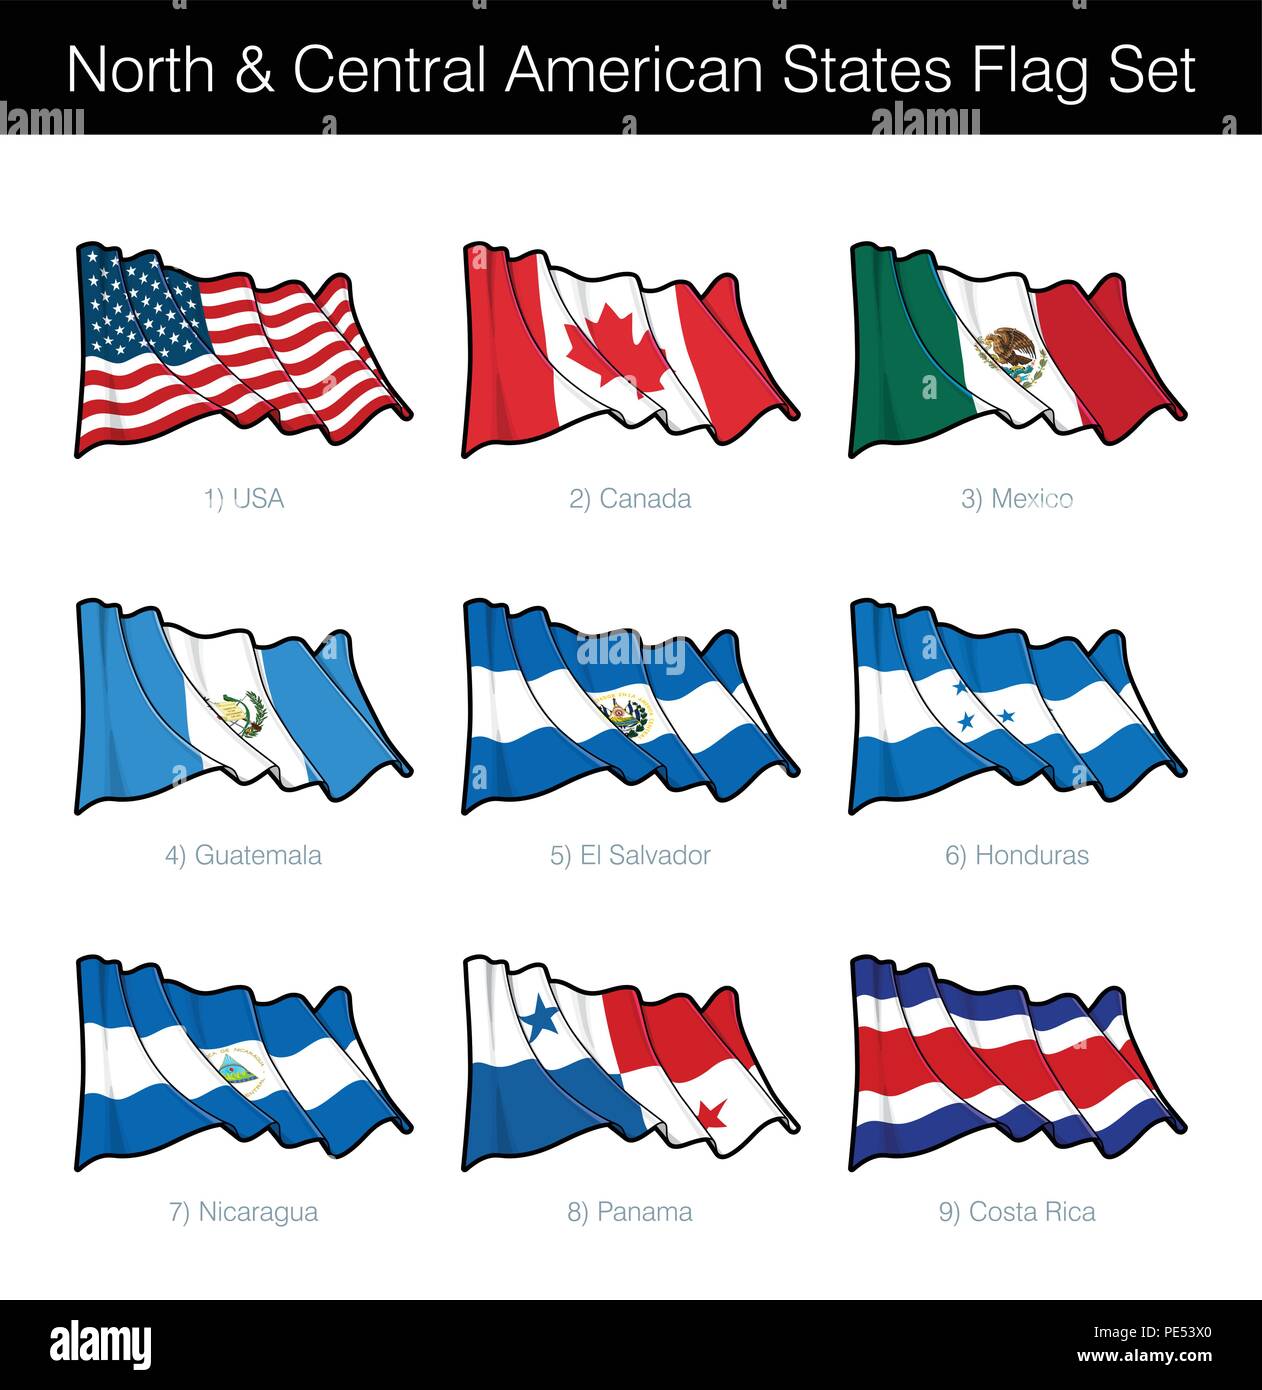 Norte y Estados Centroamericanos ondeando la bandera. El juego incluye las banderas de los EE.UU., Canadá, México, Guatemala, El Salvador, Honduras, Nicaragua, Pan Ilustración del Vector